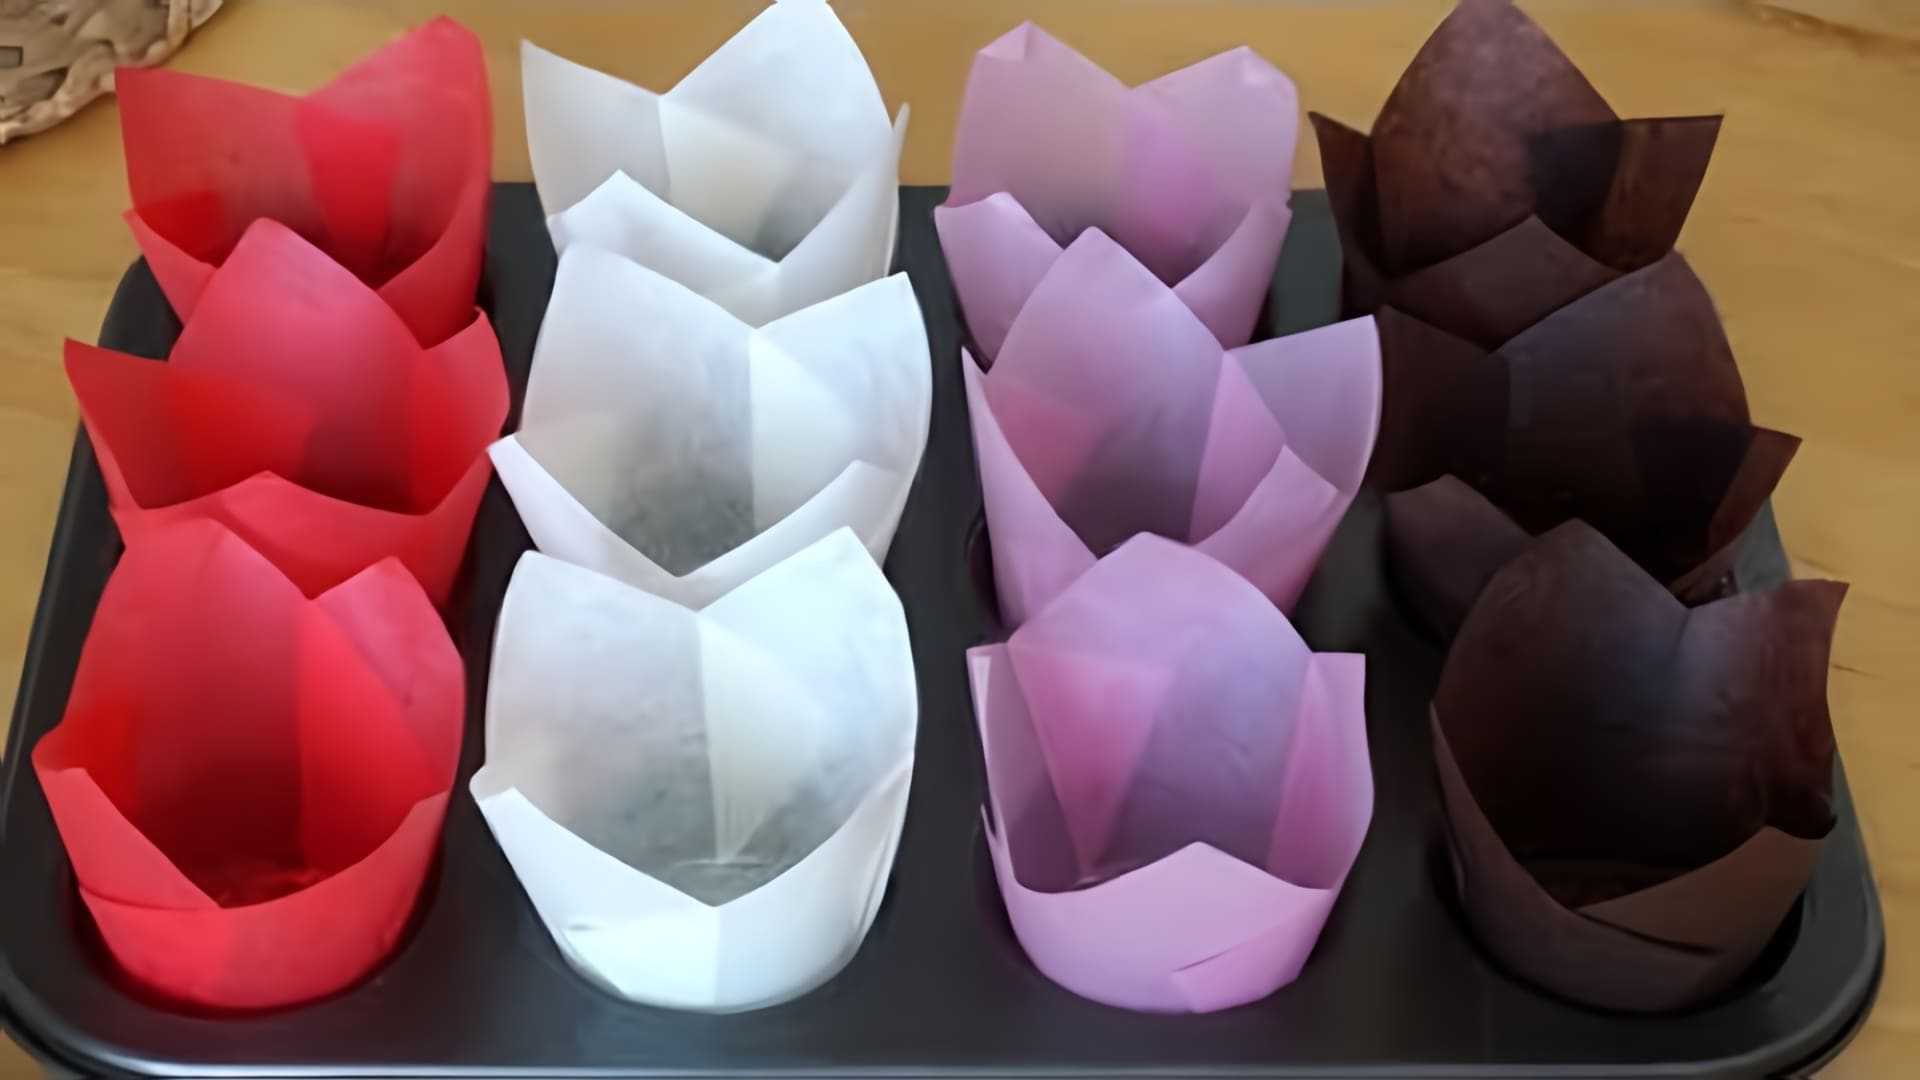 В данном видео демонстрируется, как сделать бумажные формы для выпечки маффинов, куличей, пасок и кексов